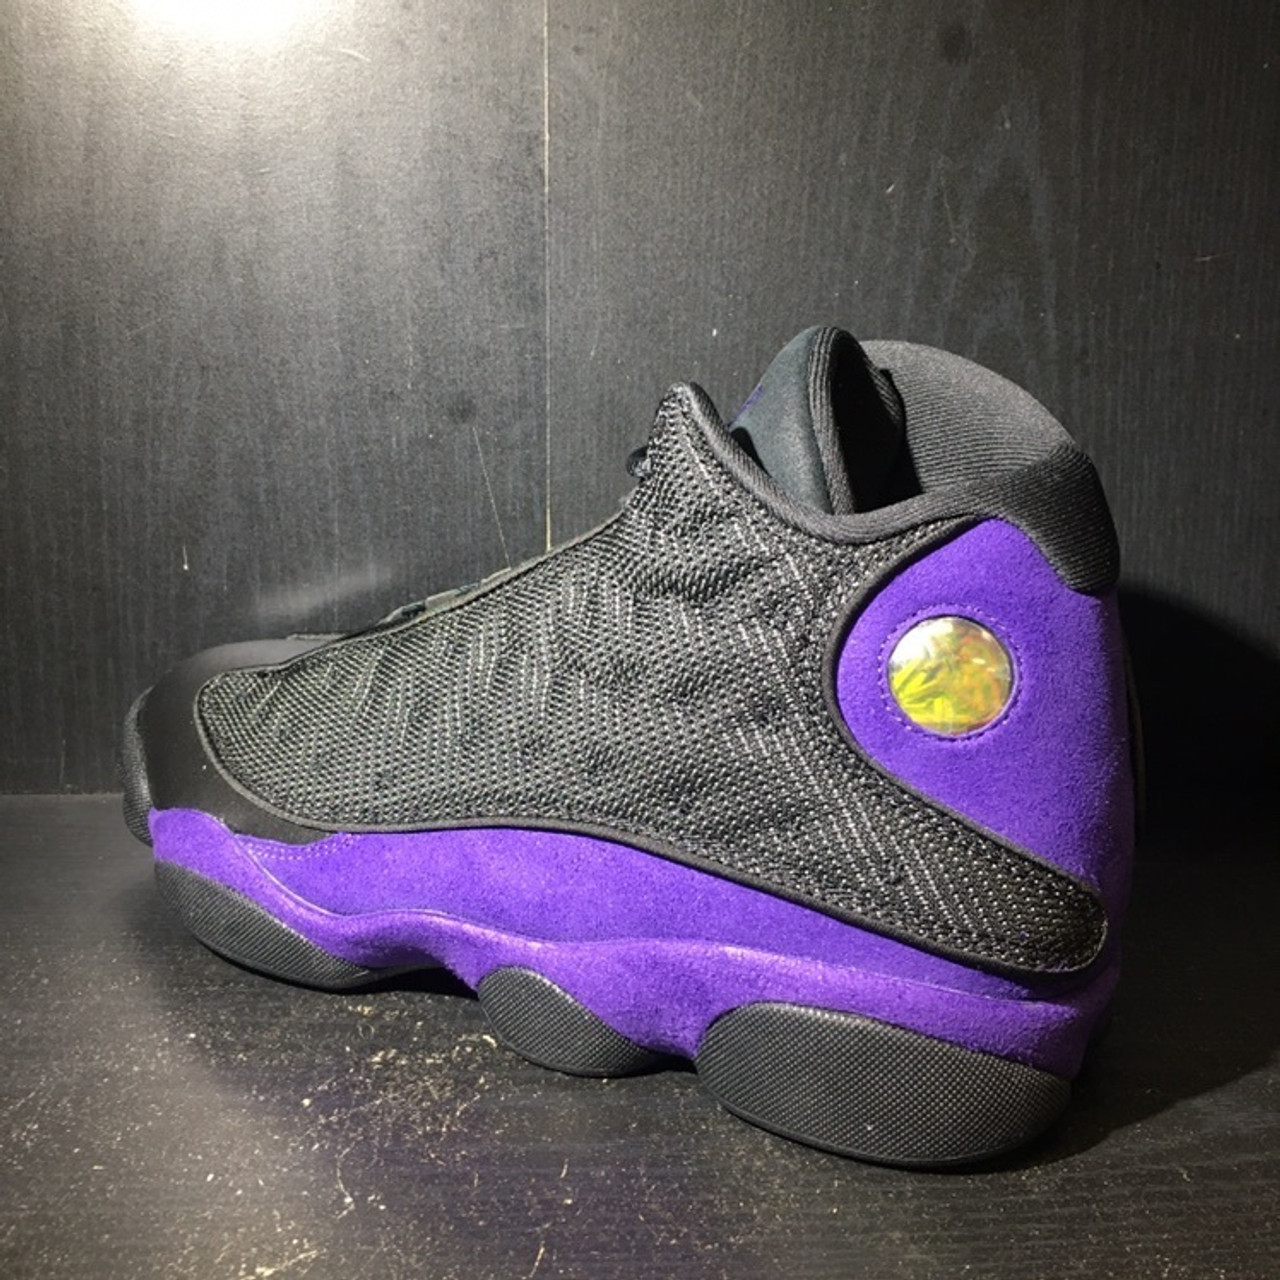 Jordan 13 Court Purple for Sale in Los Angeles, CA - OfferUp